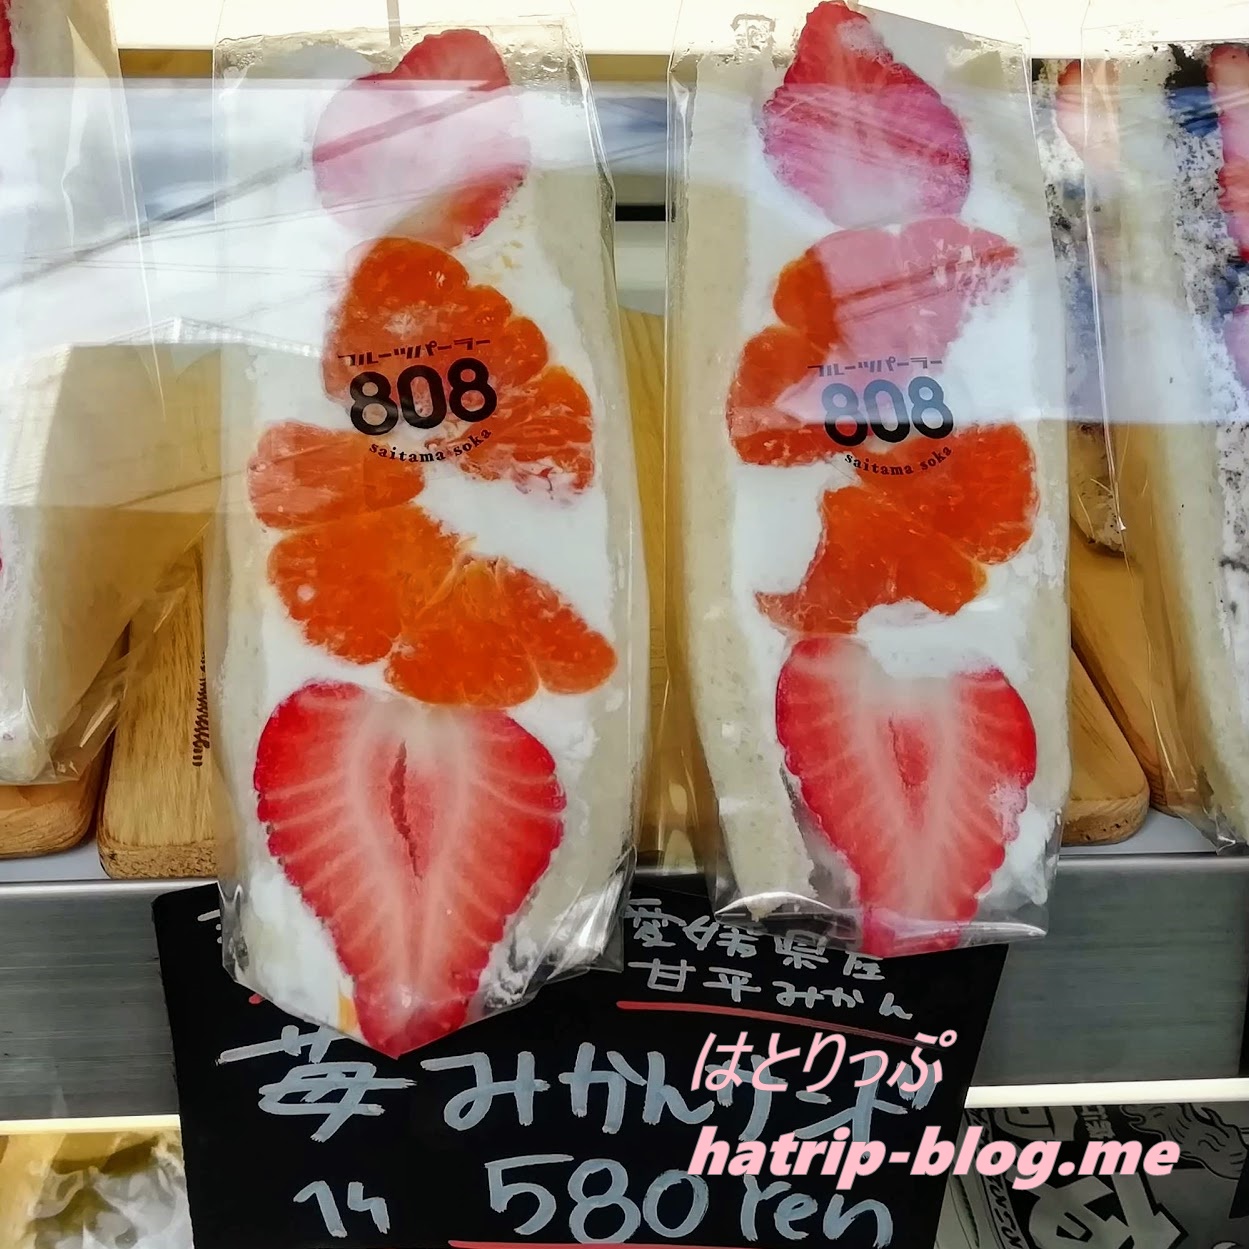 埼玉県草加市 フルーツパーラー808 フルーツサンド 苺みかんサンド